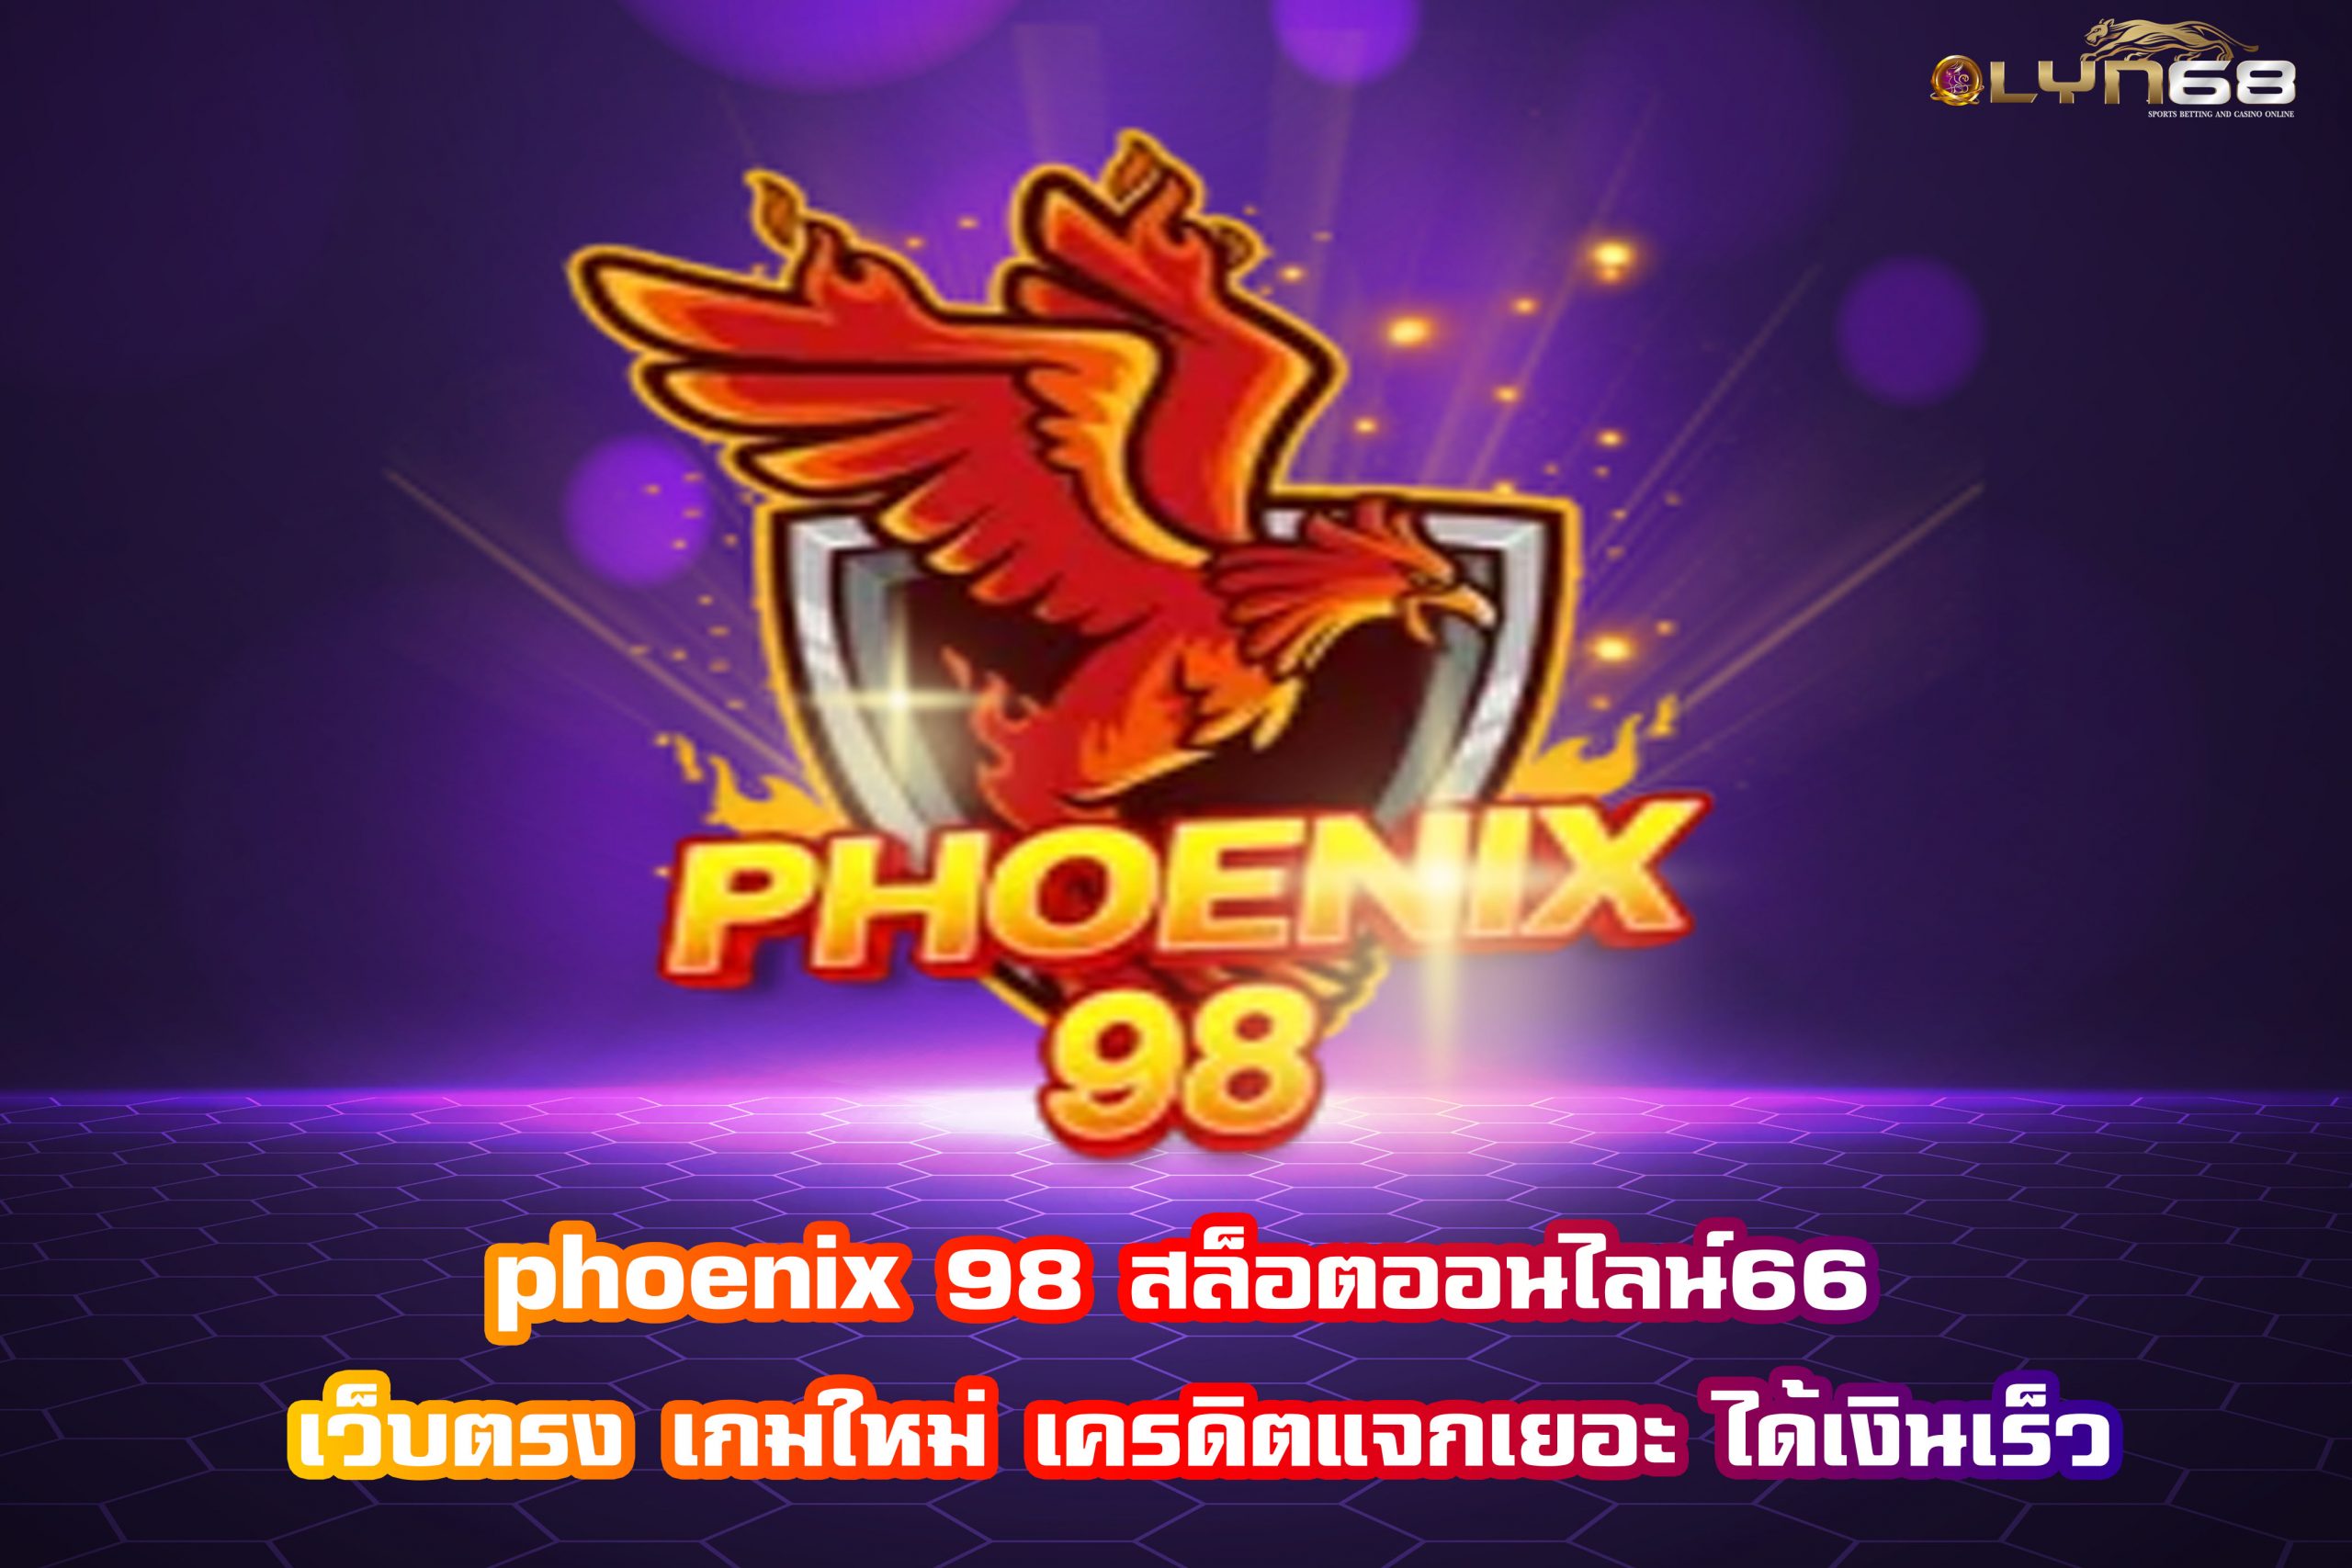 phoenix 98 สล็อตออนไลน์66 เว็บตรง เกมใหม่ เครดิตแจกเยอะ ได้เงินเร็ว